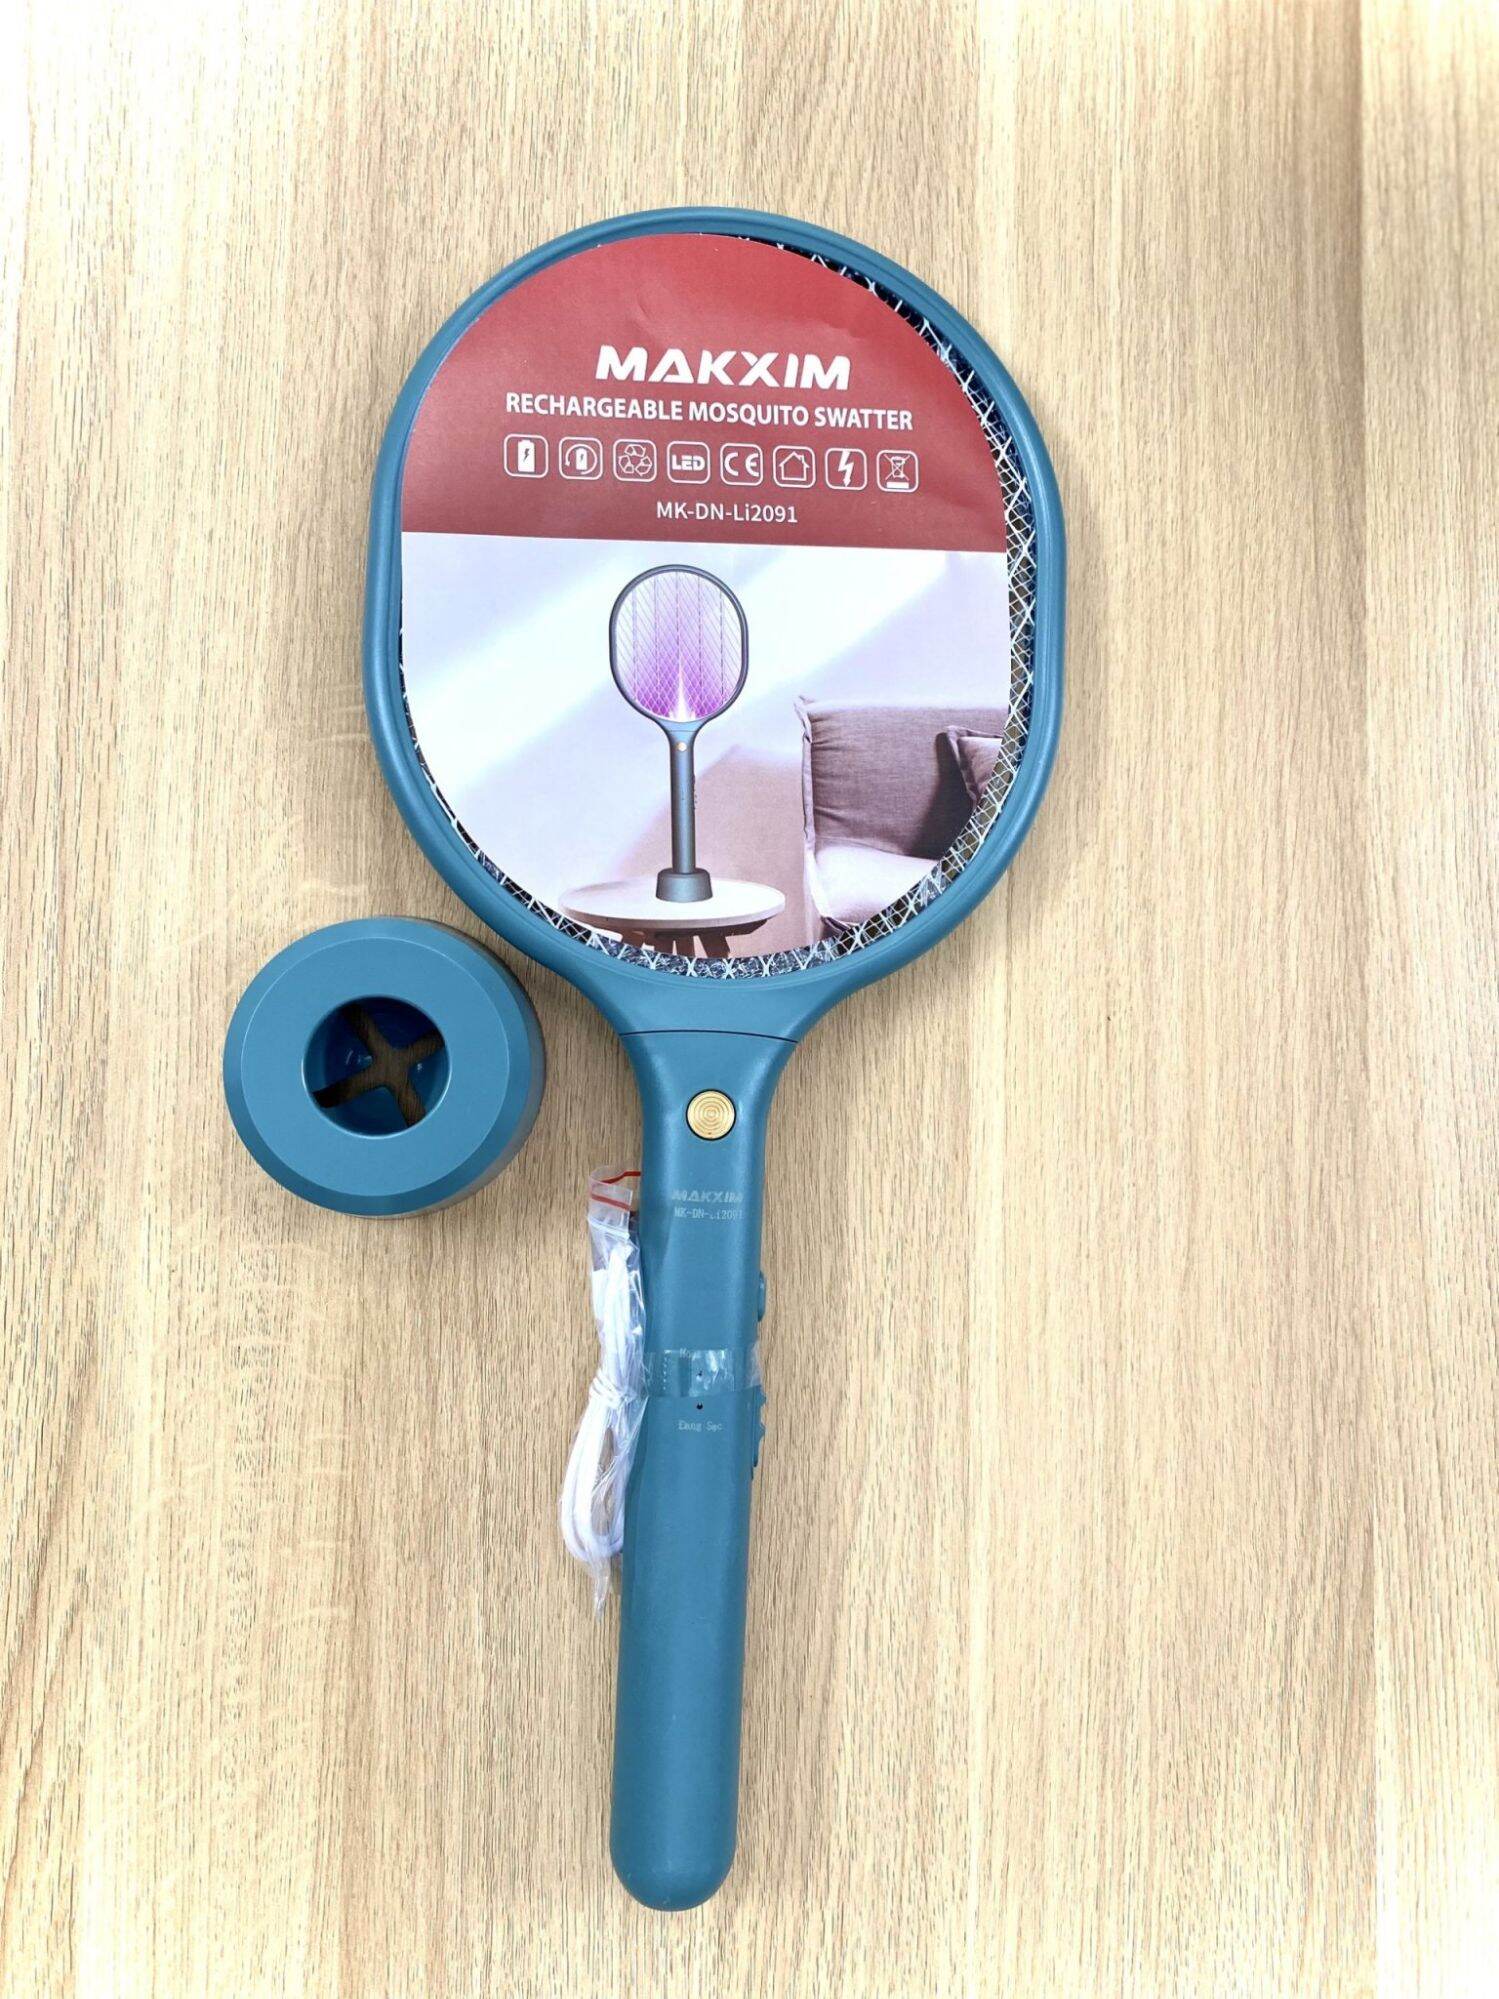 Vợt muỗi thông minh kiêm đèn bắt muỗi cao cấp Makxim 3 trong 1 (MK DN-Li2091)